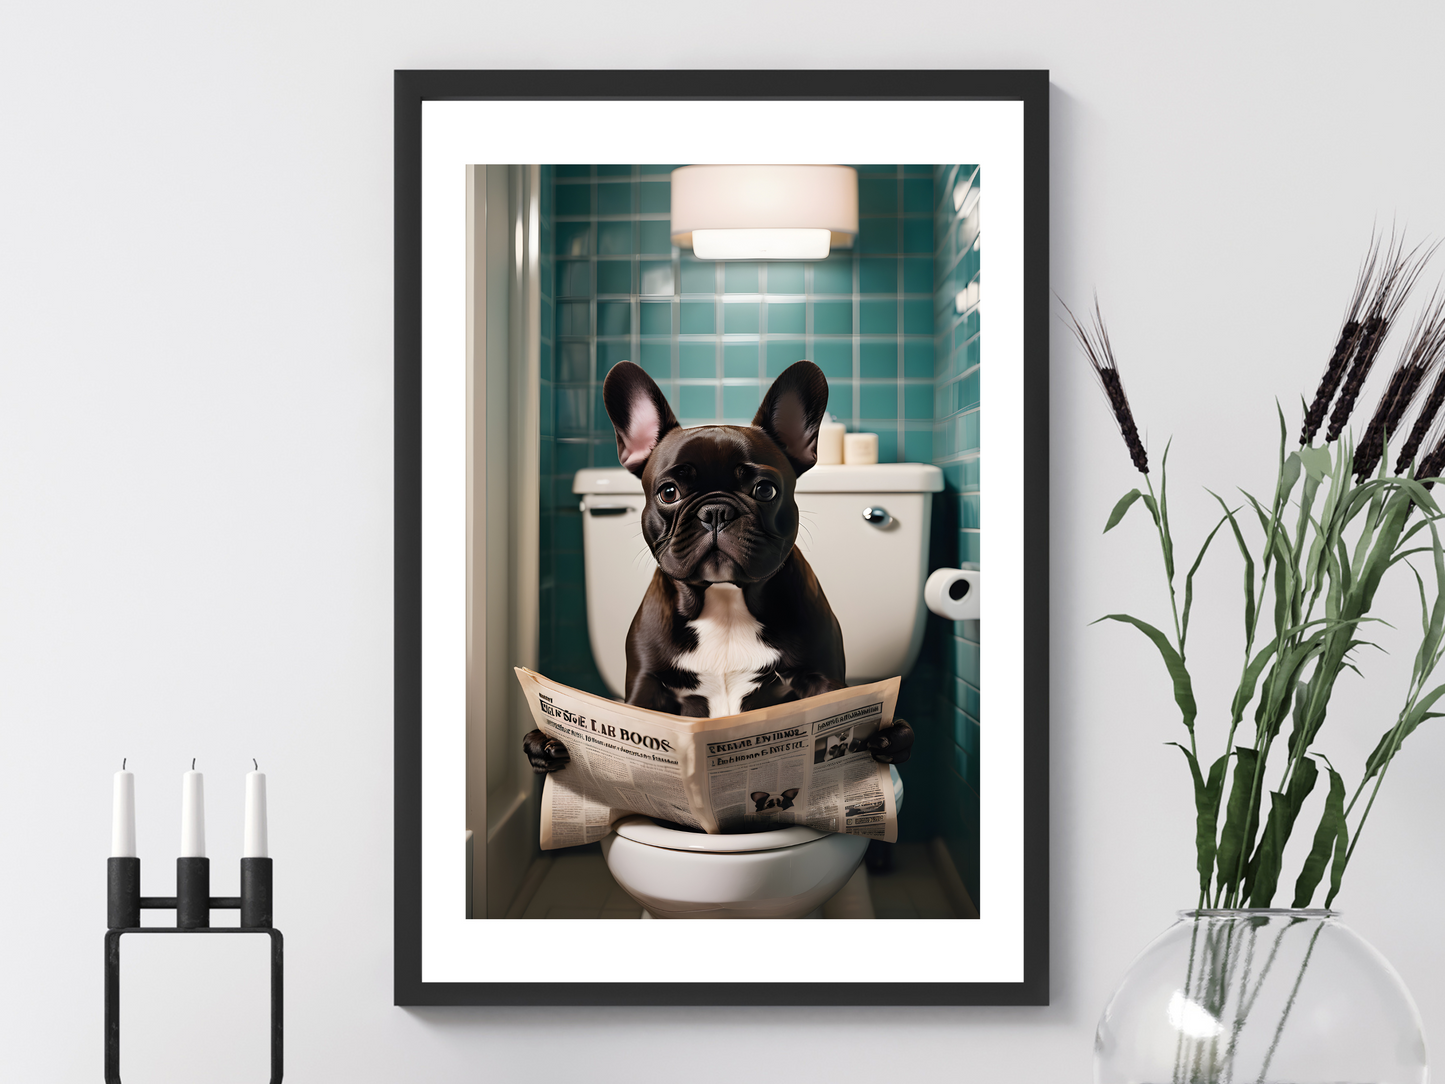 French Bulldog on Toilet